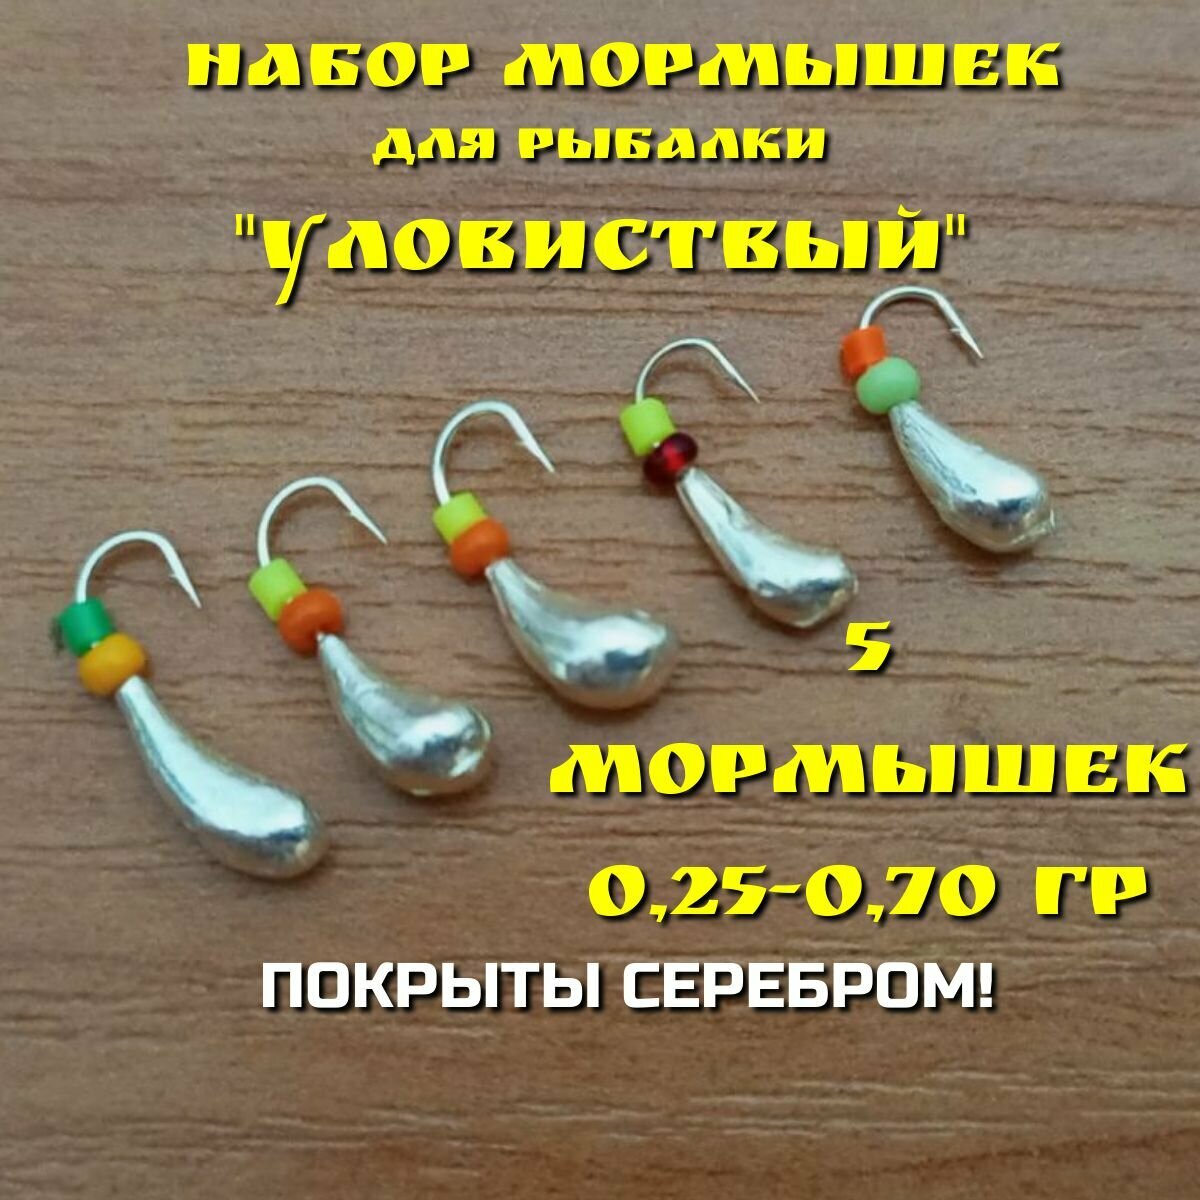 Мормышки для зимней и летней рыбалки набор 5 штук покрытые серебром 025-070 грамм